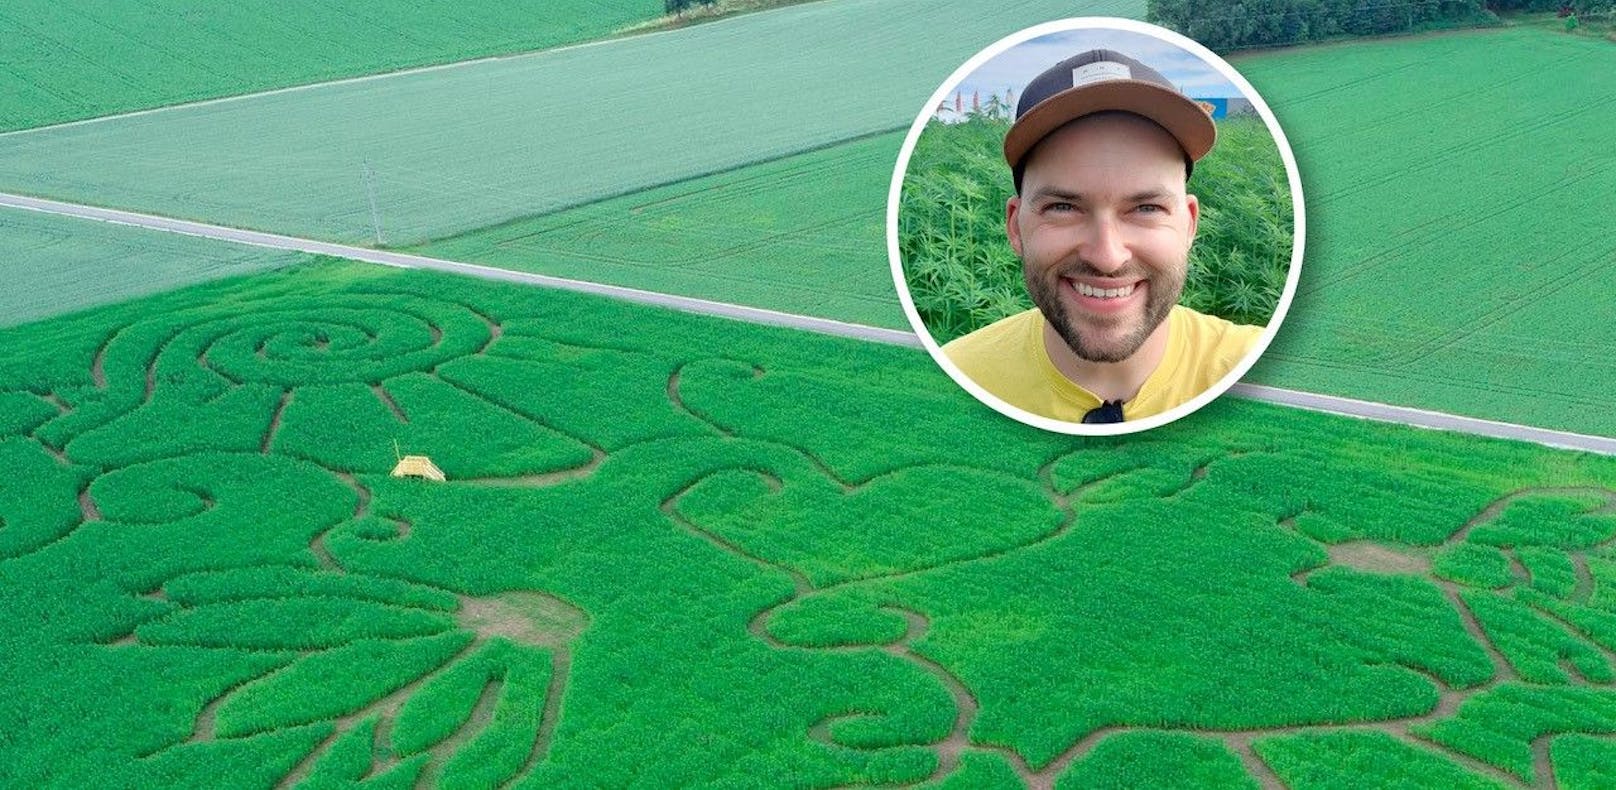 Christian Huber plante zusammen mit seiner Gattin Irene das riesige Hanf-Labyrinth.